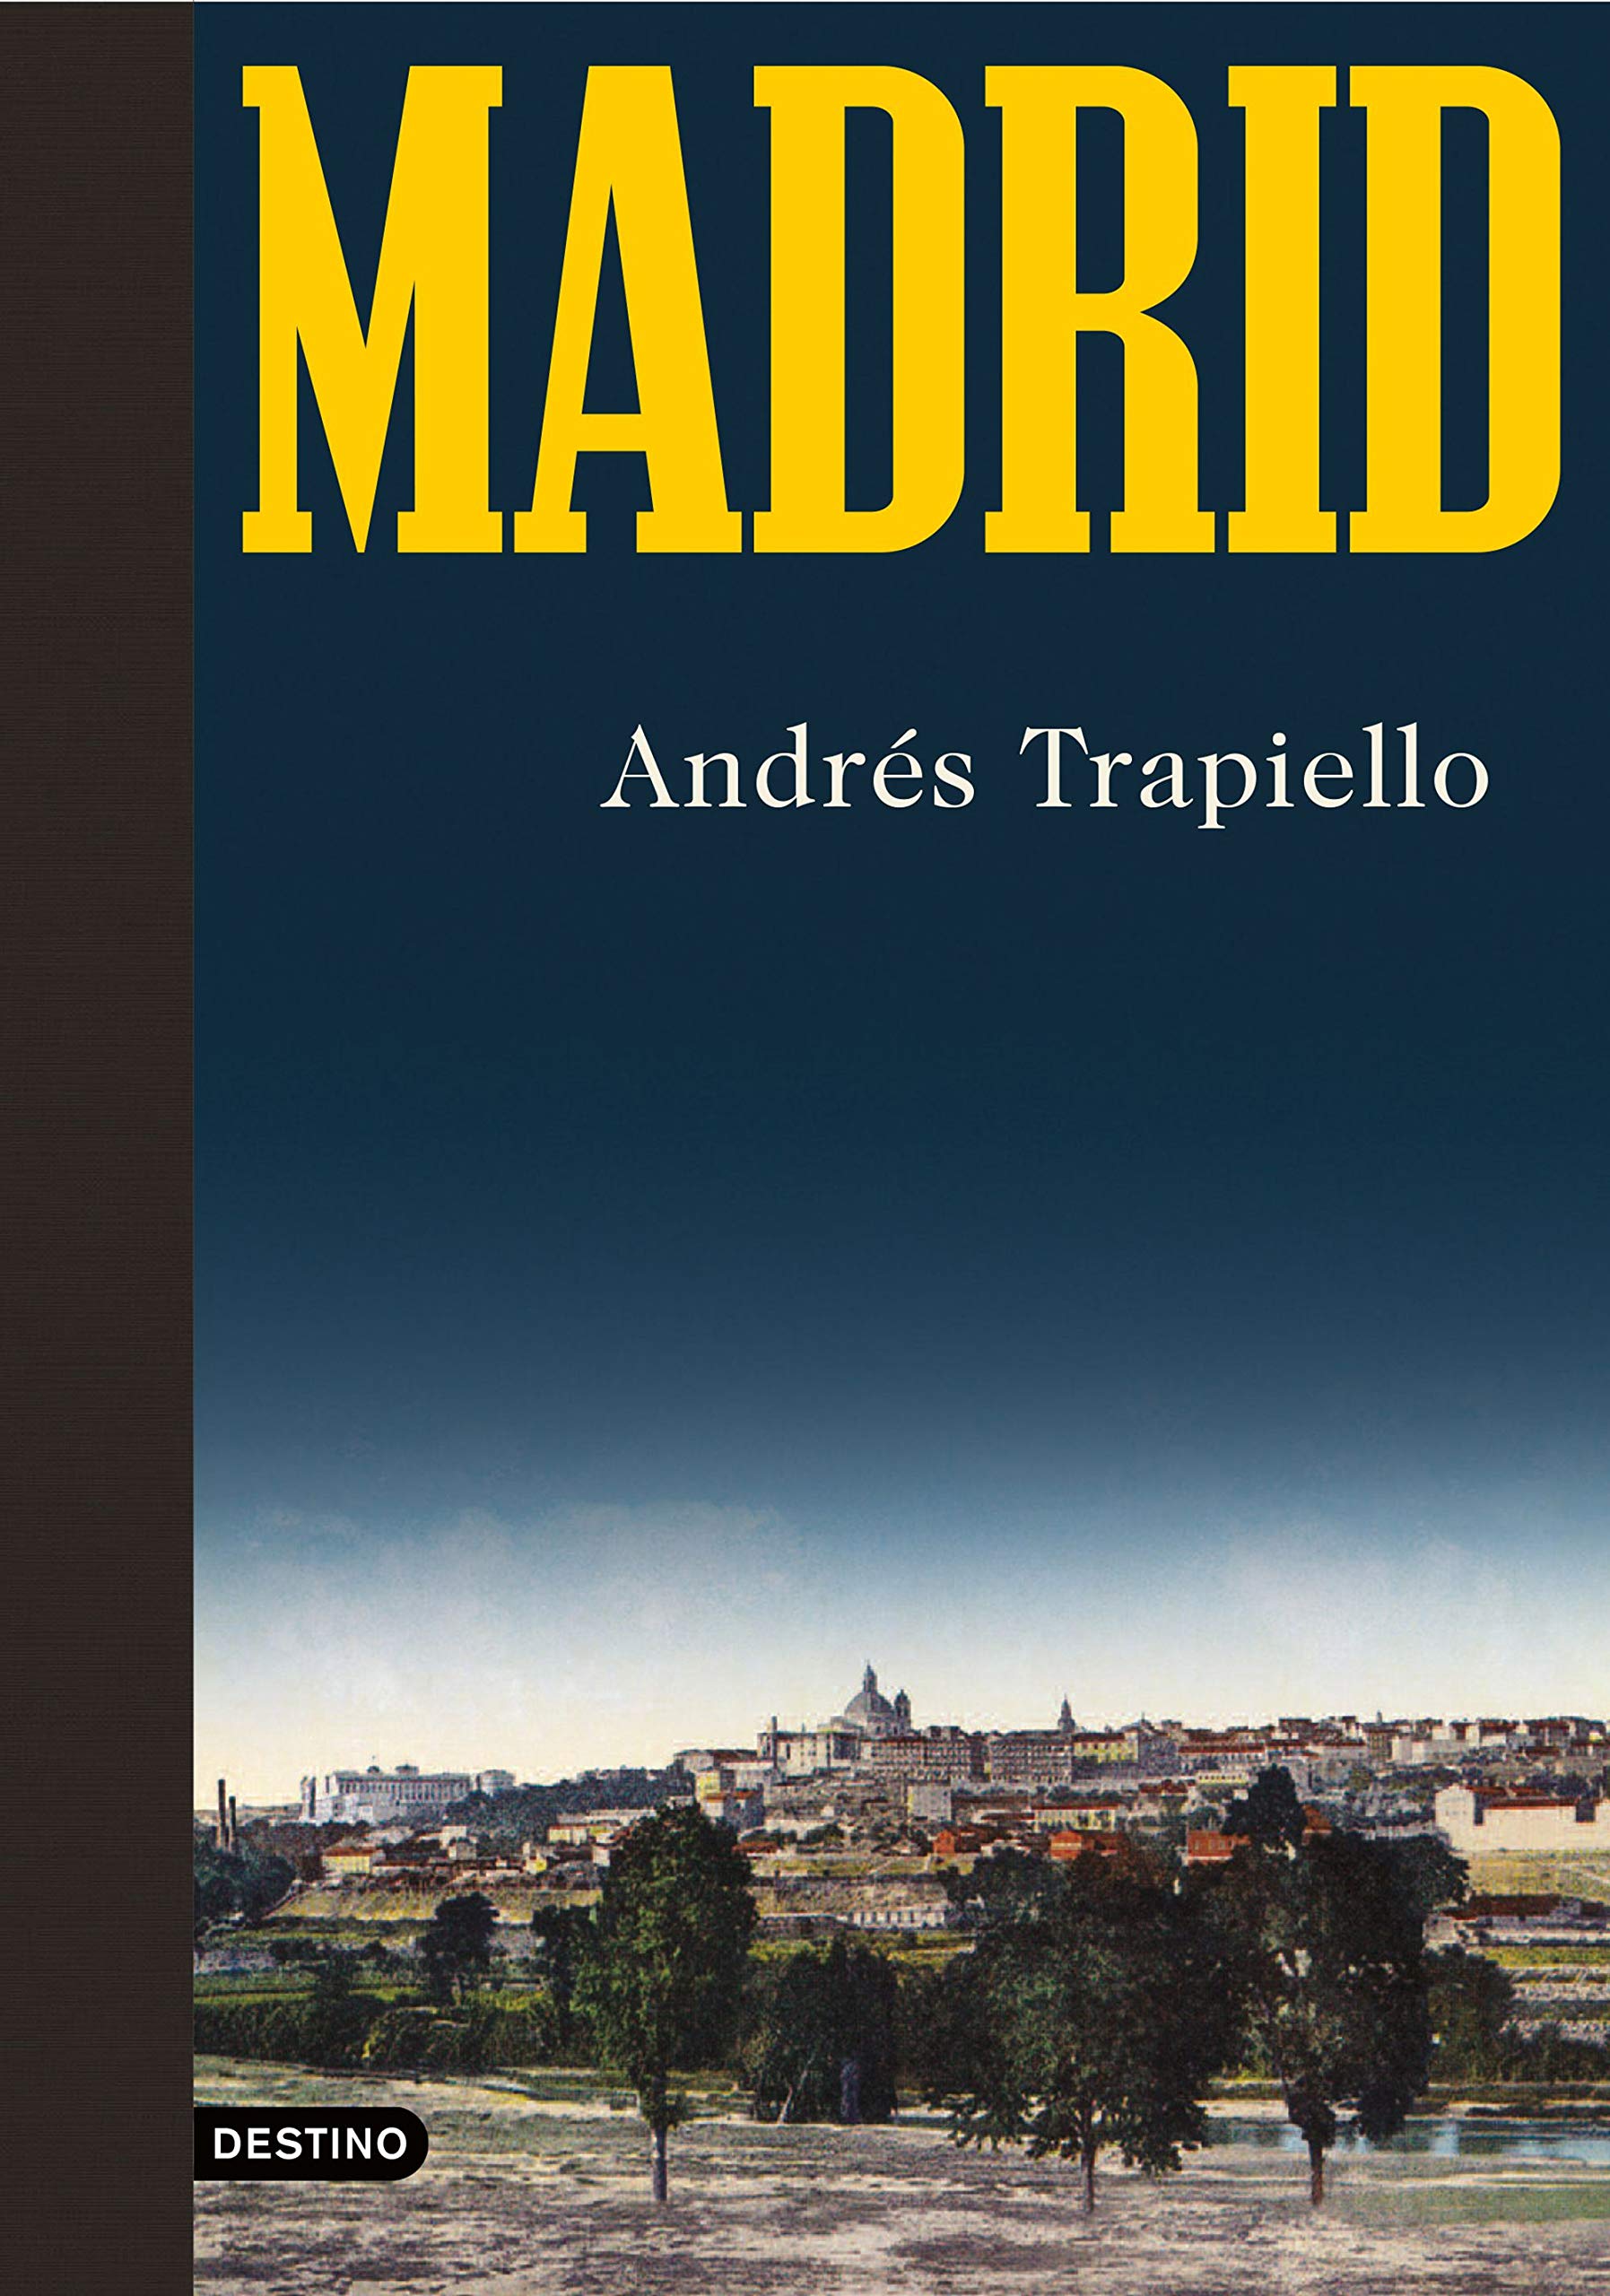 Madrid de Andrés Trapiello